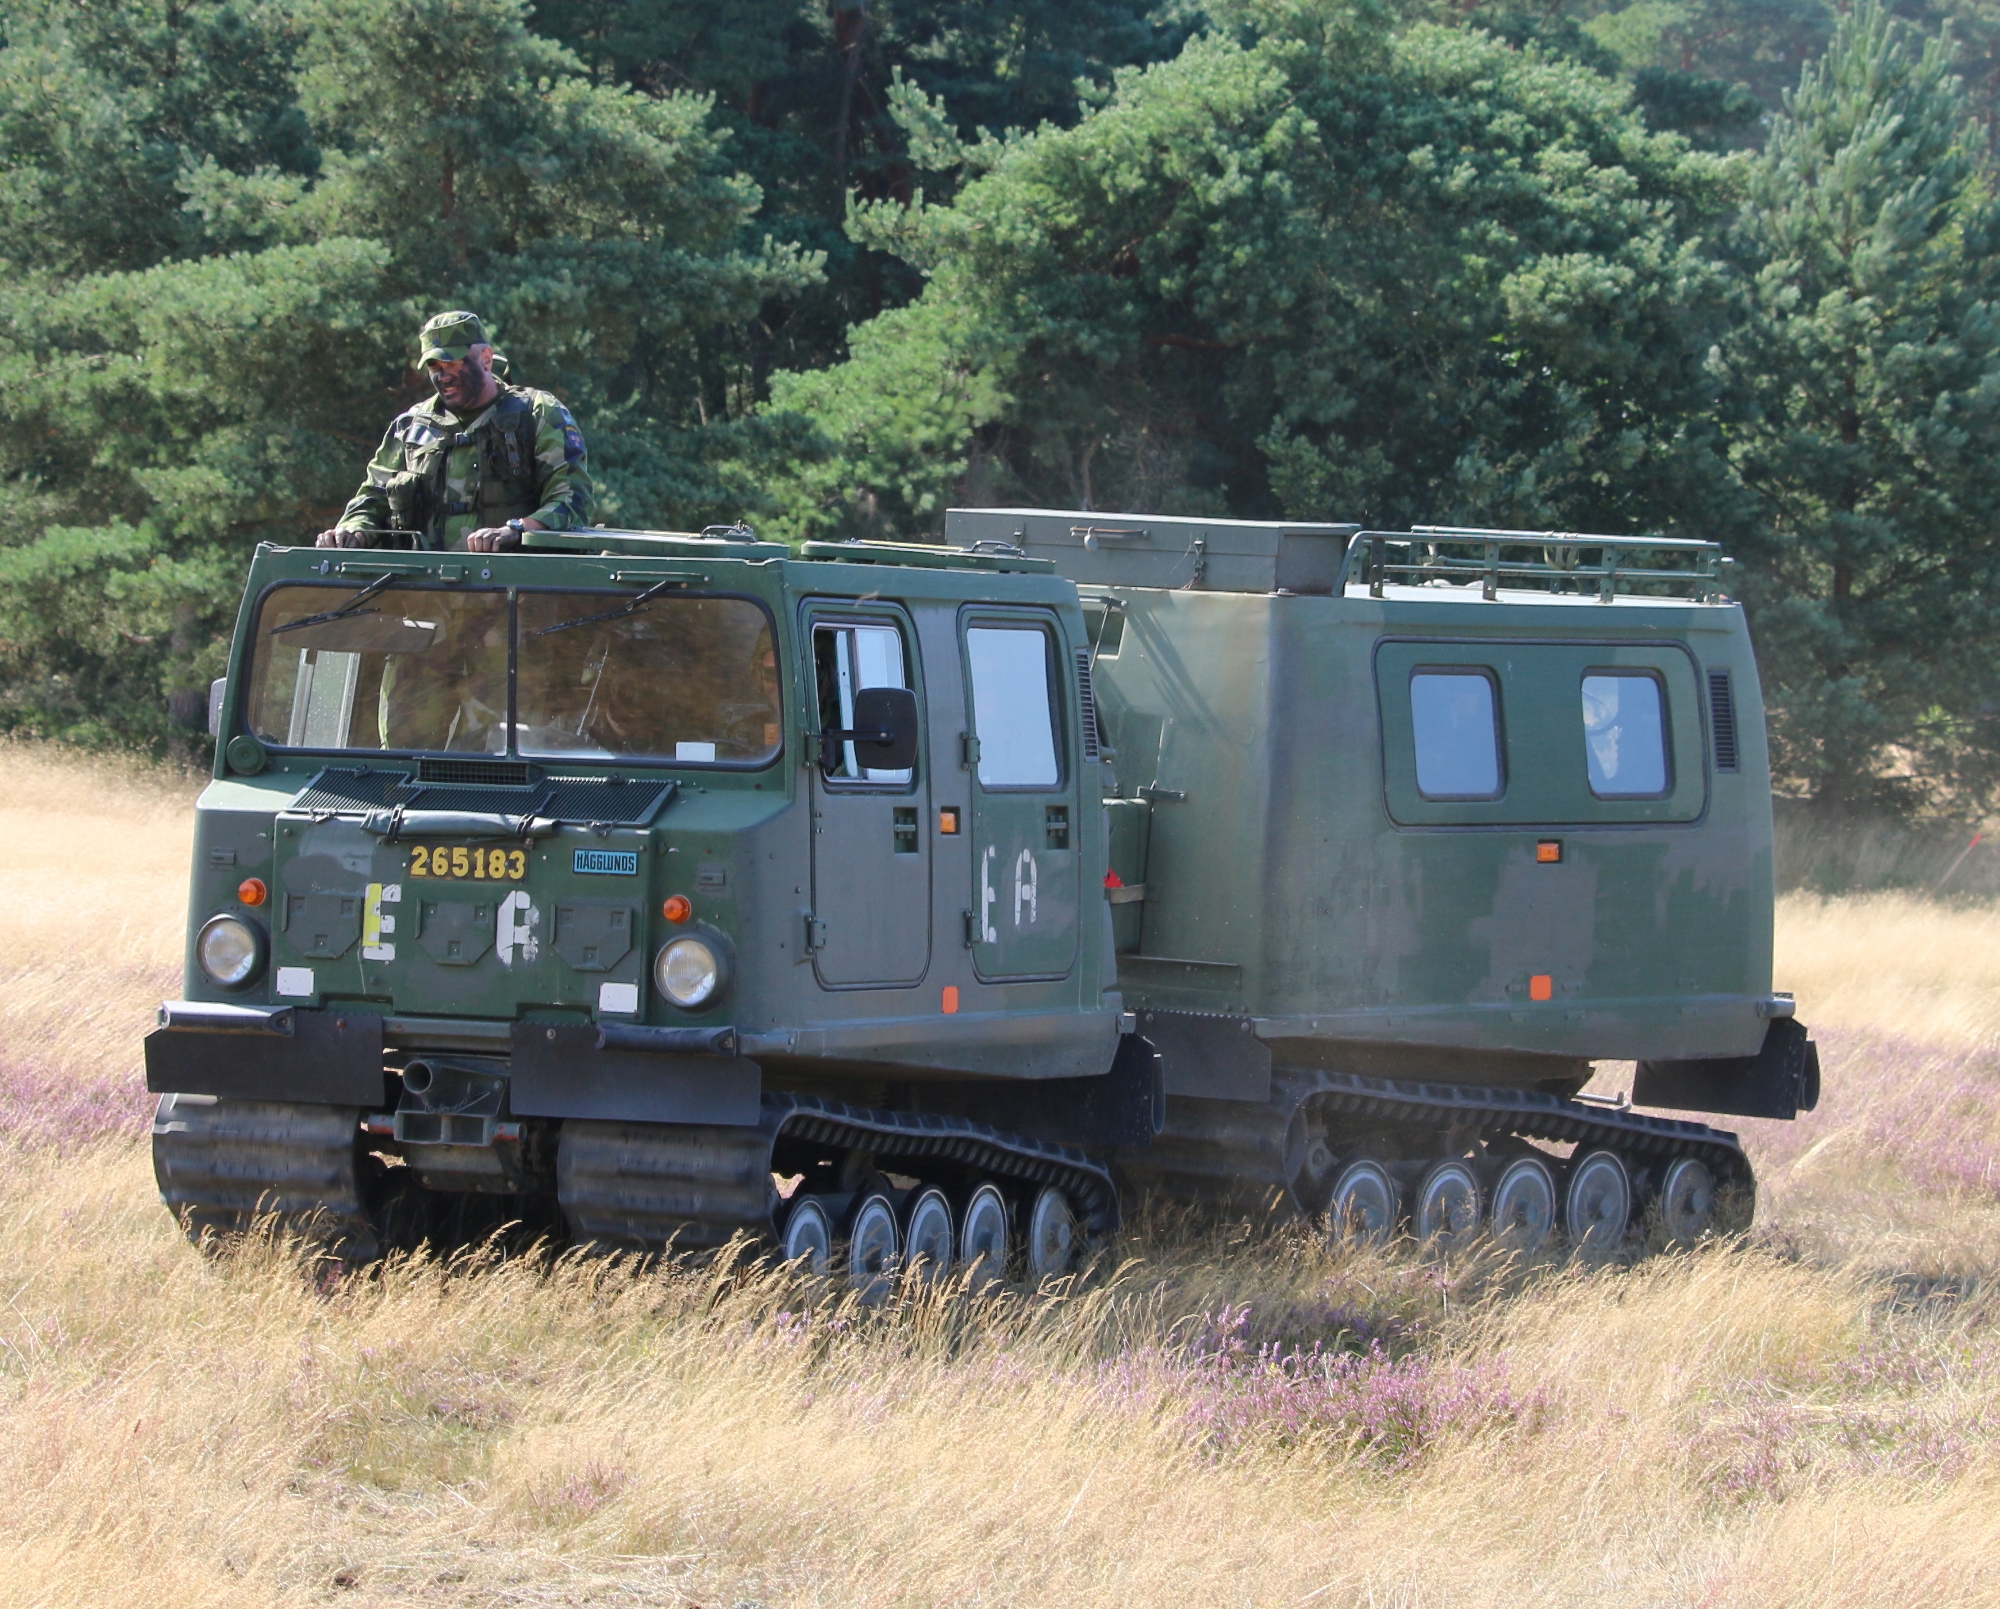 Leopard-radioer, Bandvagn 206 pansrede terrængående køretøjer og WISINT 1 minerydningskøretøjer: Tyskland giver Ukraine en ny våbenpakke